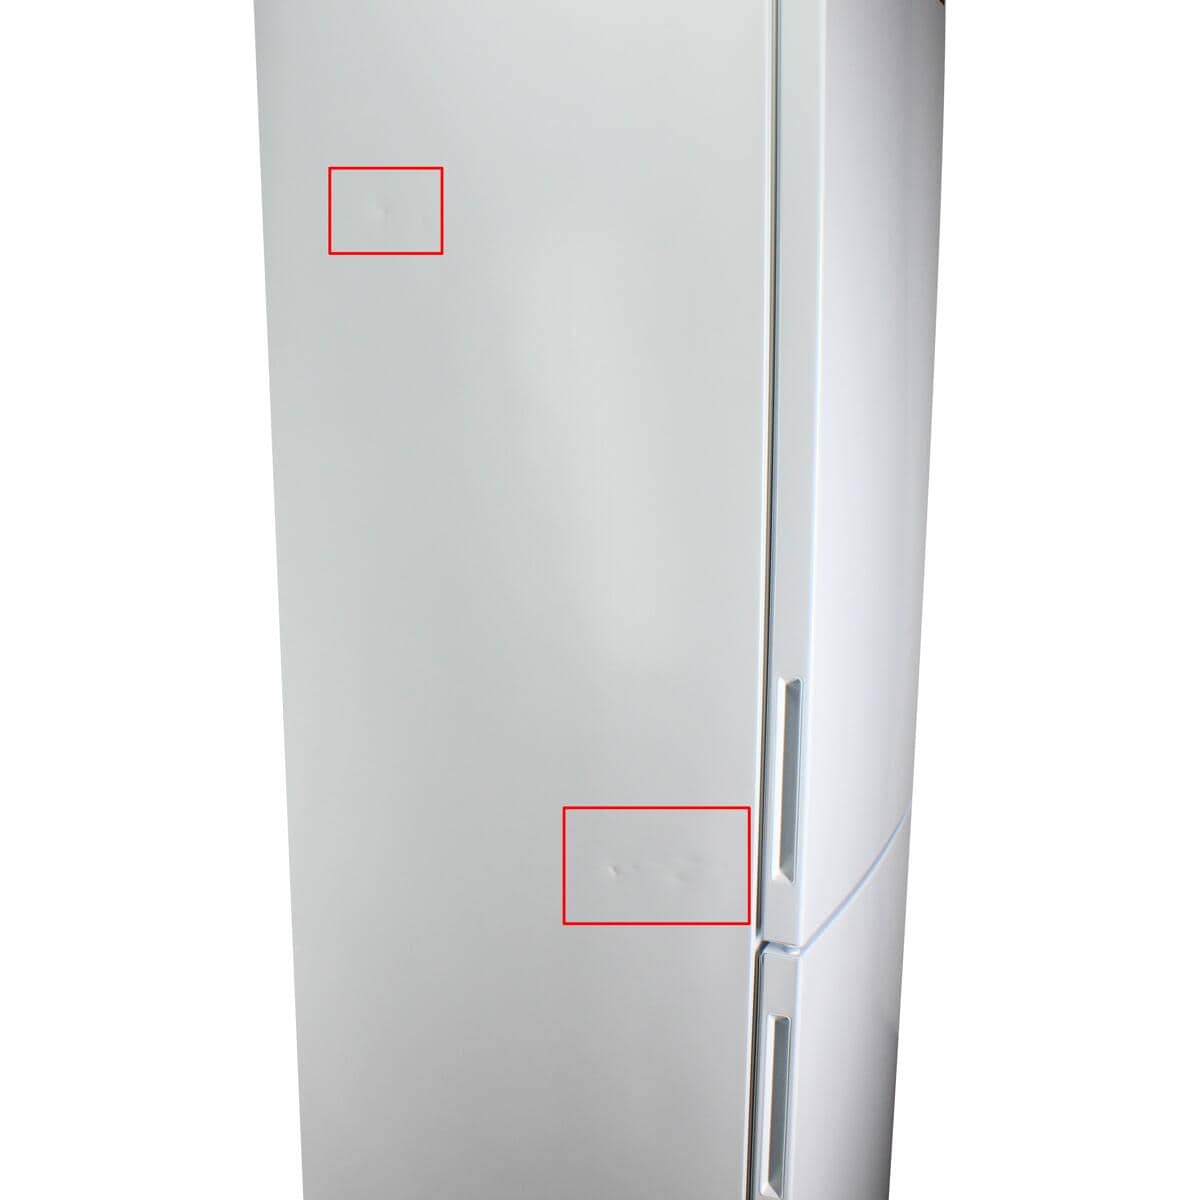 LG GBP62SWNAC Stand-Kühl-Gefrierkombination 59,5cm Frostfrei breit Beleuchtung 384 weiß Liter Multi-Airflow Nullzone LED